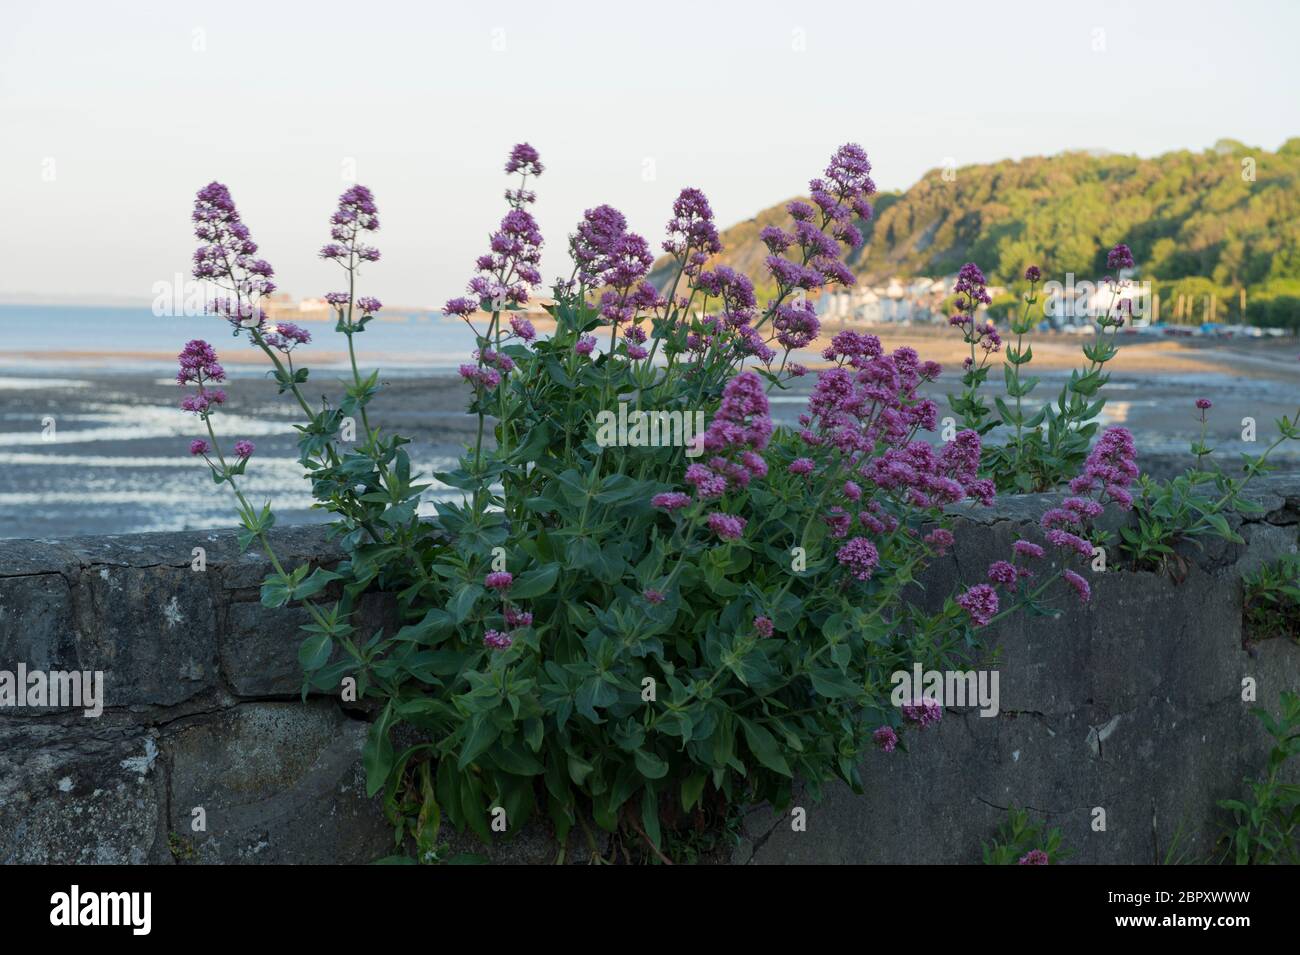 Valeriana rossa una fuga giardino cresce abbondamente nelle calde condizioni del mare intorno a Mumbles, Gower, Galles. Qui naturalizzato e crescendo su un muro. Foto Stock